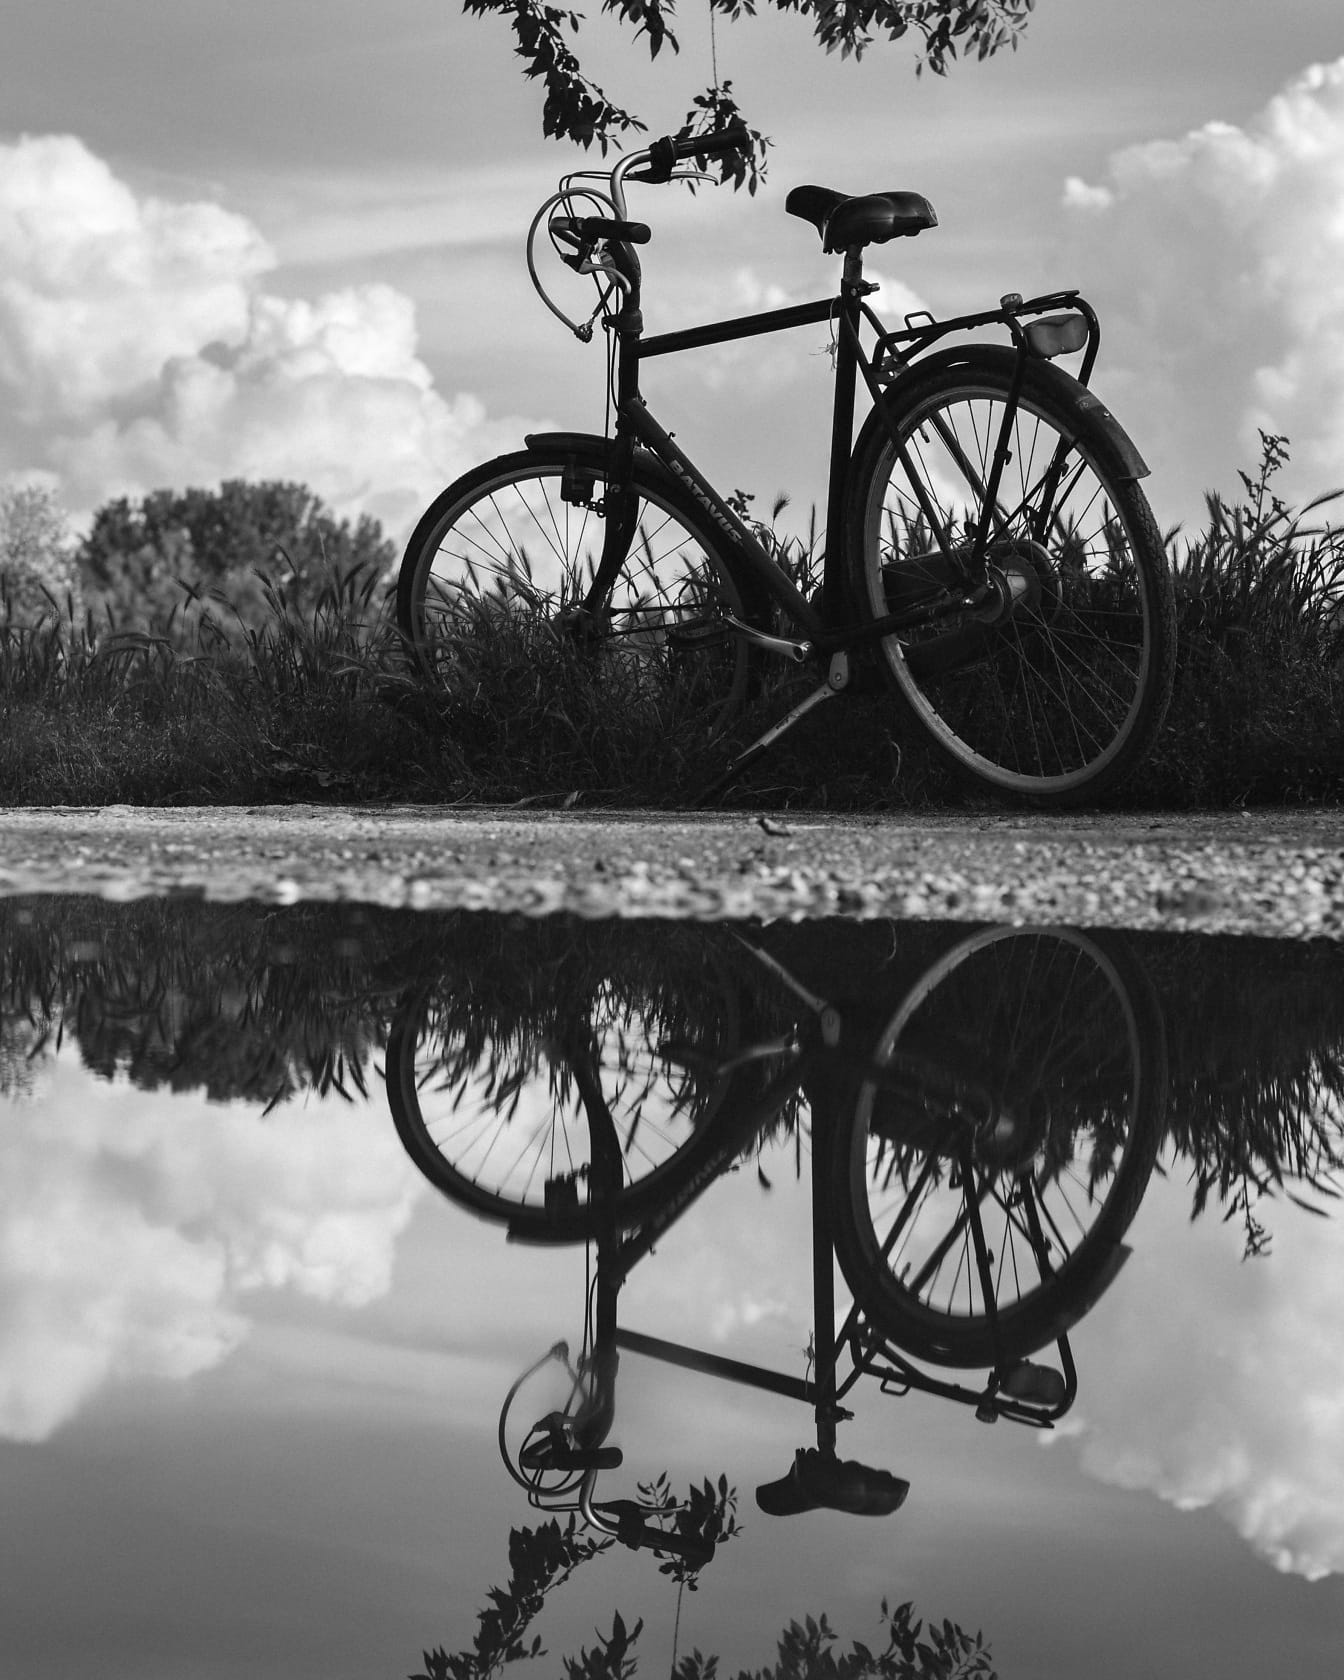 Монохромне фото велосипеда на сільській дорозі з відображенням на воді